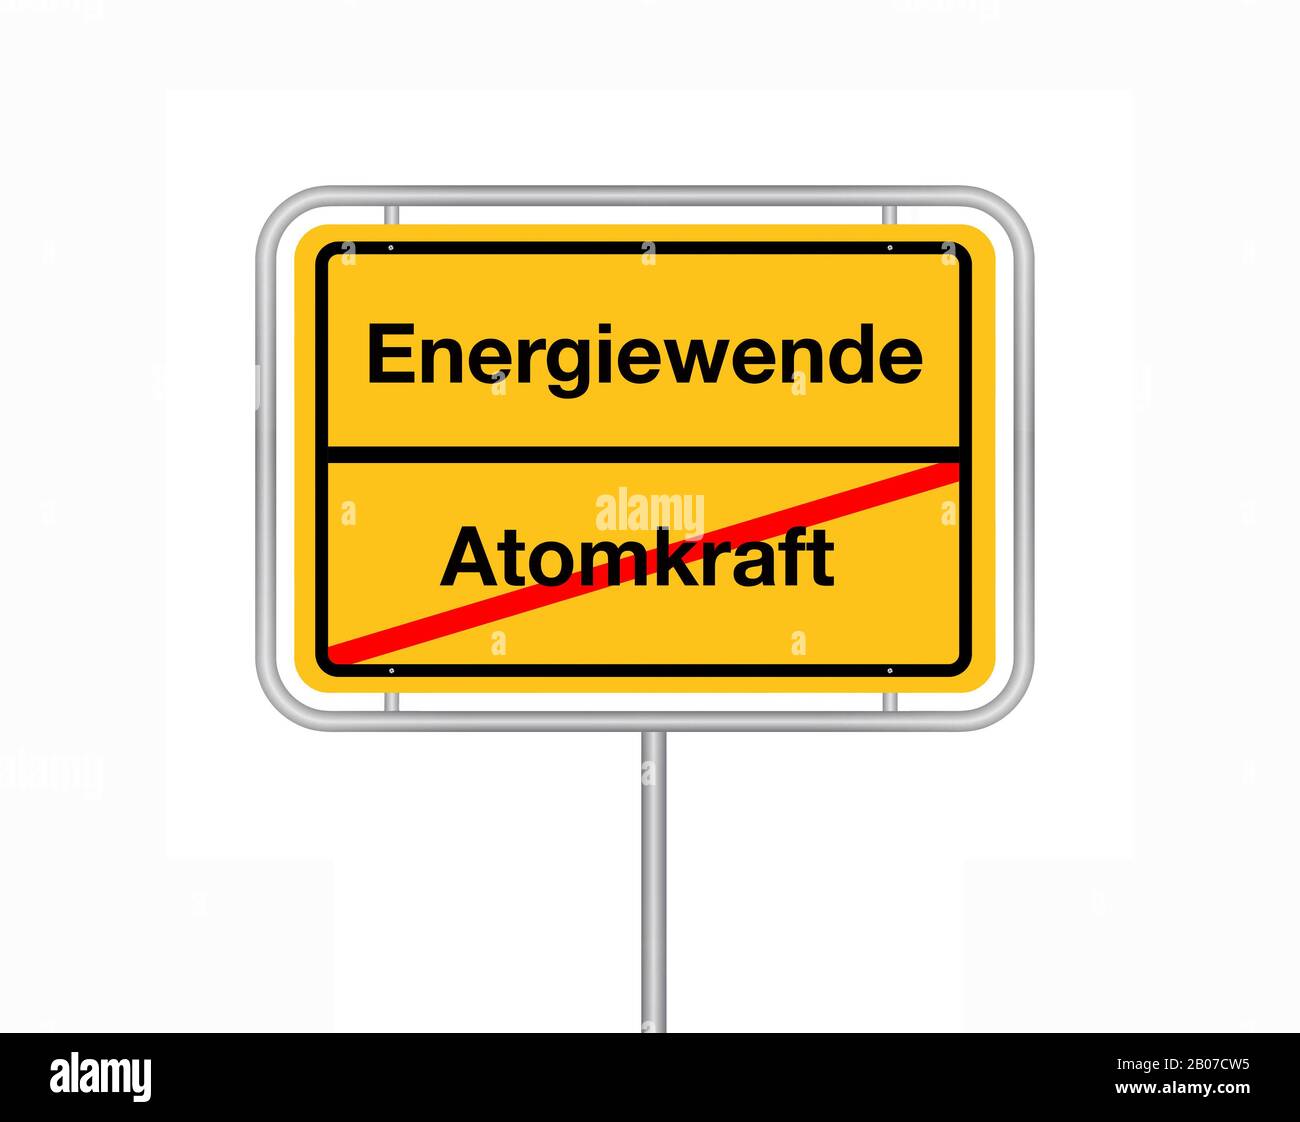 Señal de límite de la ciudad de Atomkraft - Energiewende, energía atómica - cambio de energía, Alemania Foto de stock